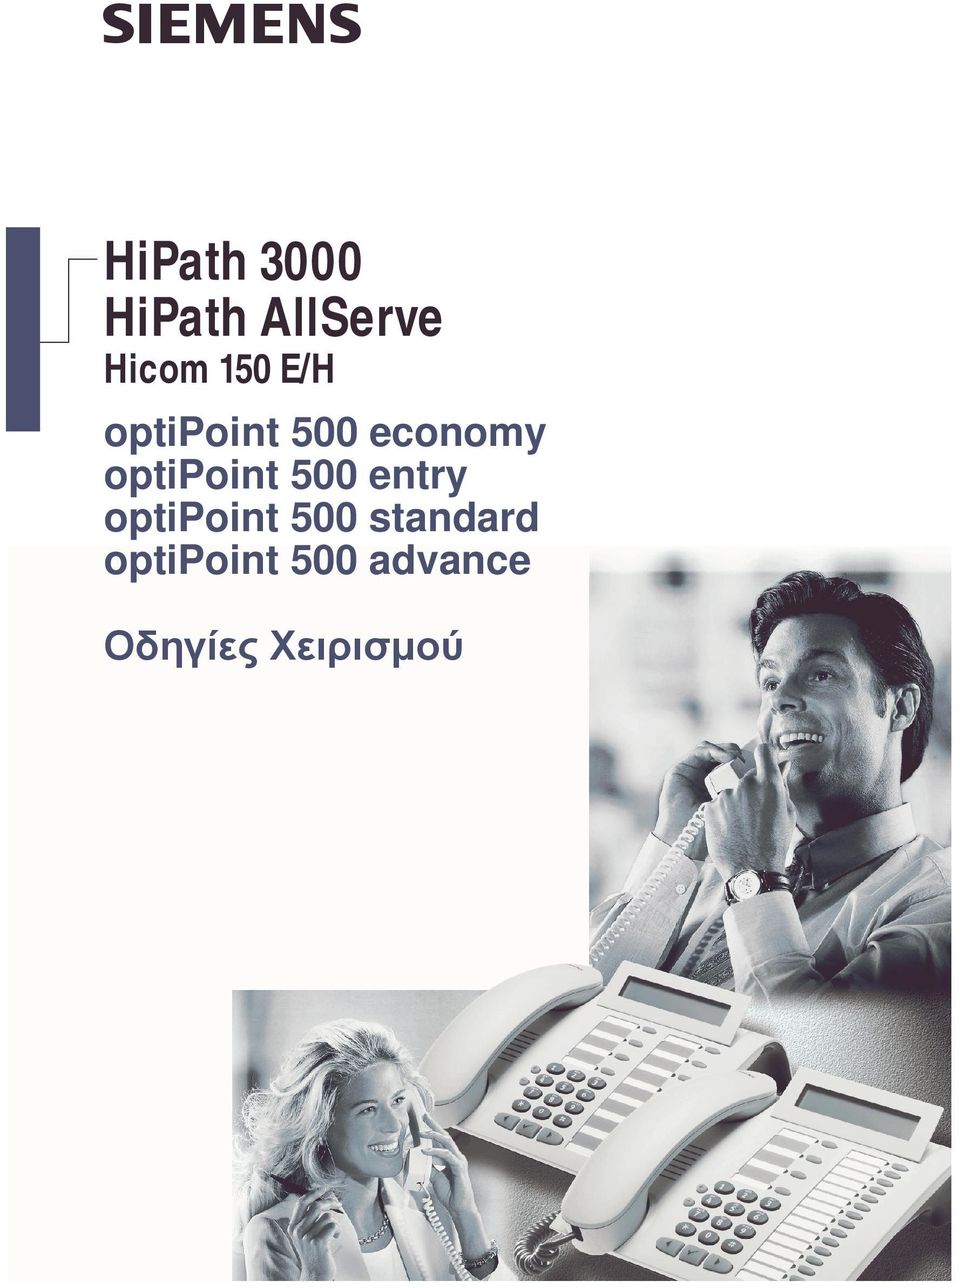 500 entry ptipint 500 standard